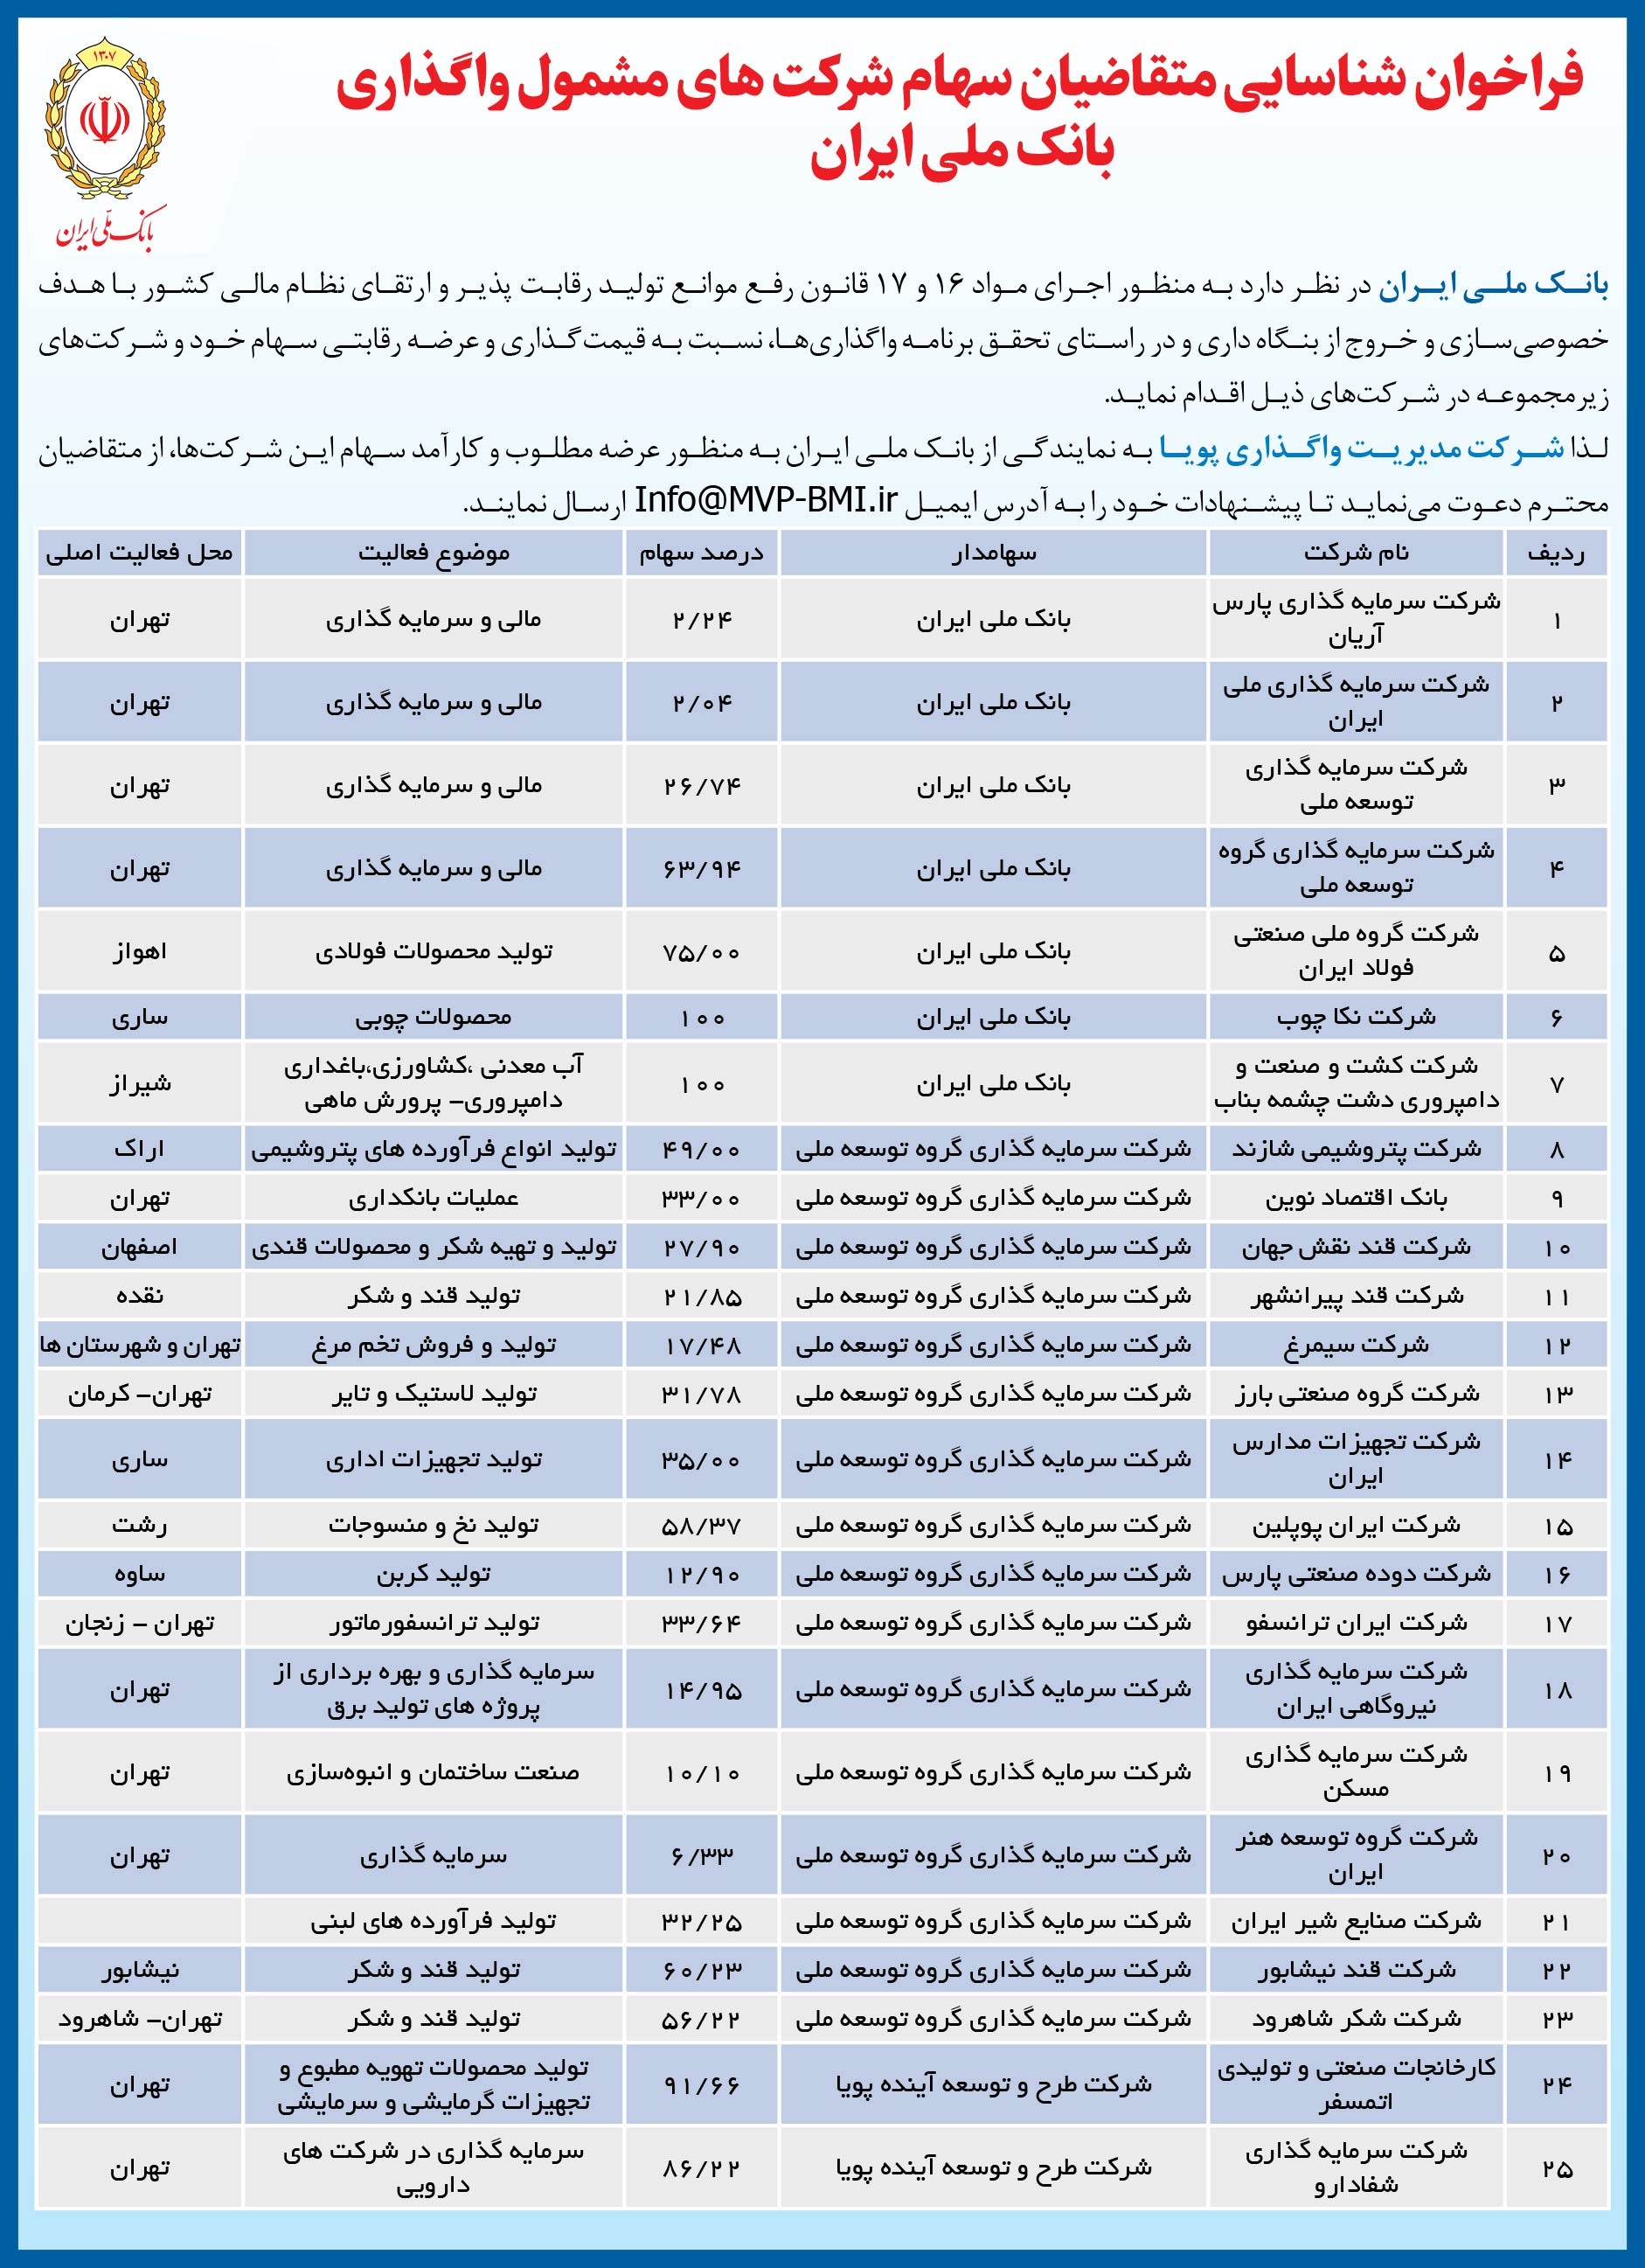 اعلام لیست عرضه سهام شرکت های تابعه بانک ملی ایران در راستای خروج از بنگاه داری